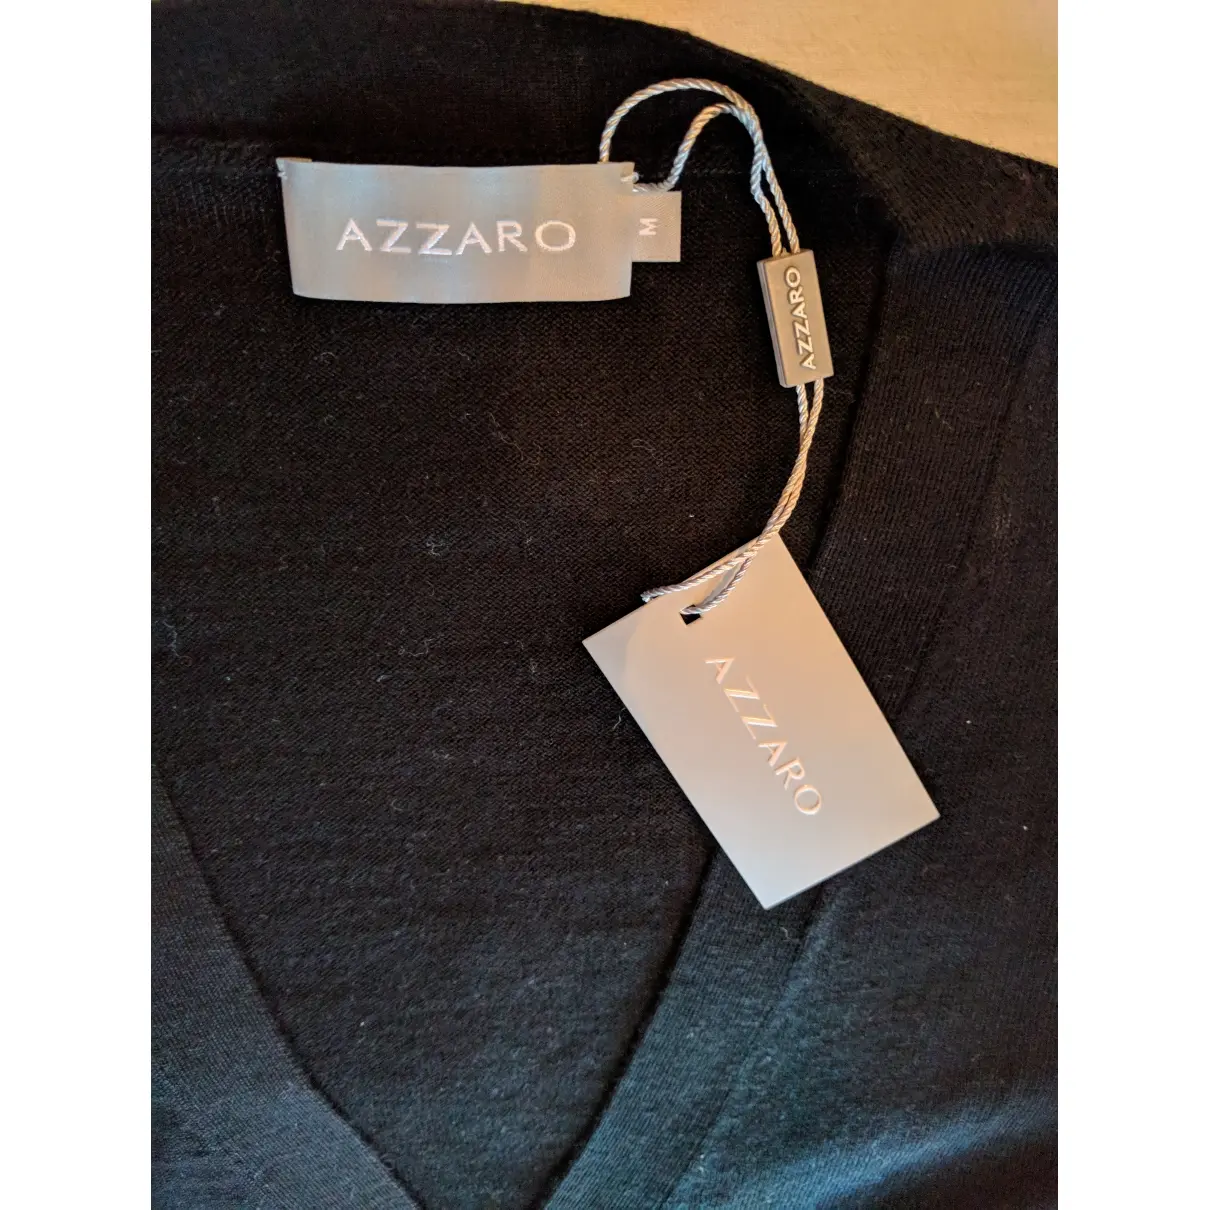 Buy Azzaro Wool knitwear & sweatshirt online